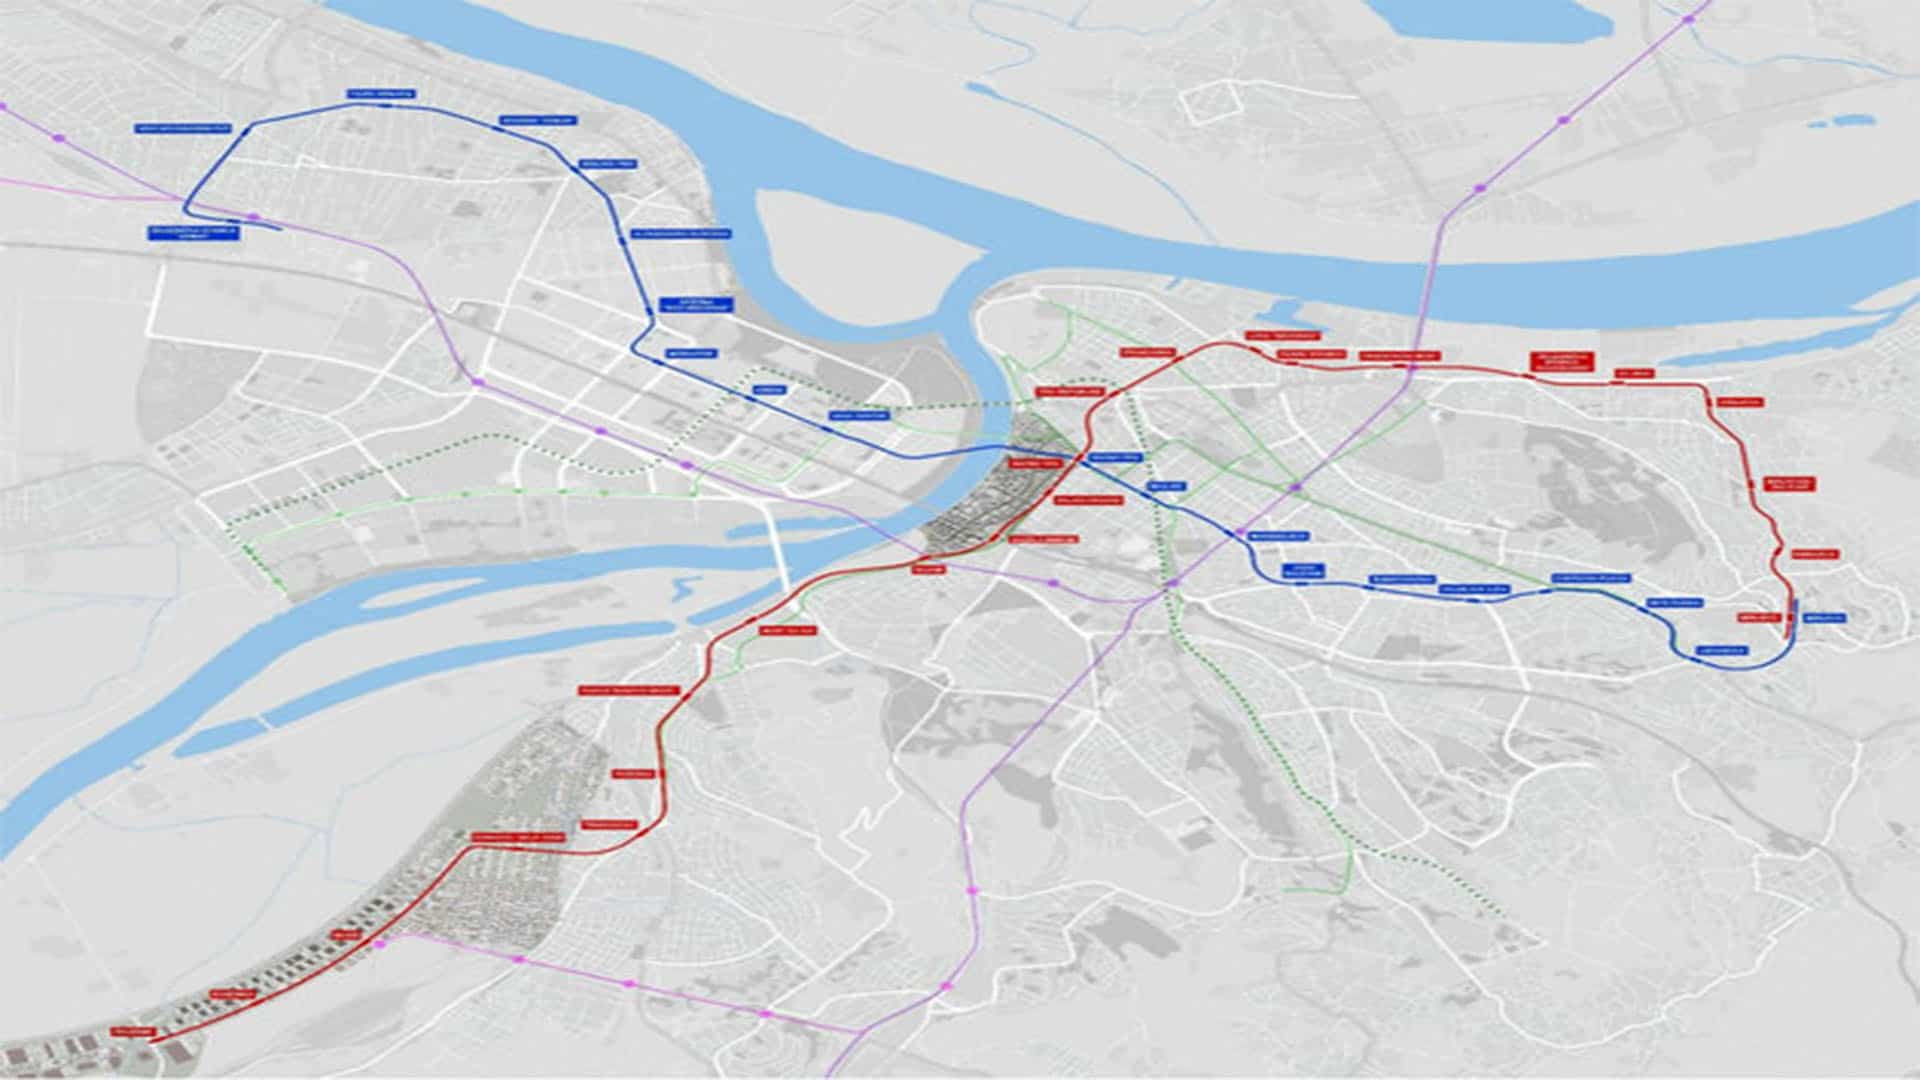 Од изградње београдског метроа је само рат скупљи: “Возној карти будућности” одавно истекао рок